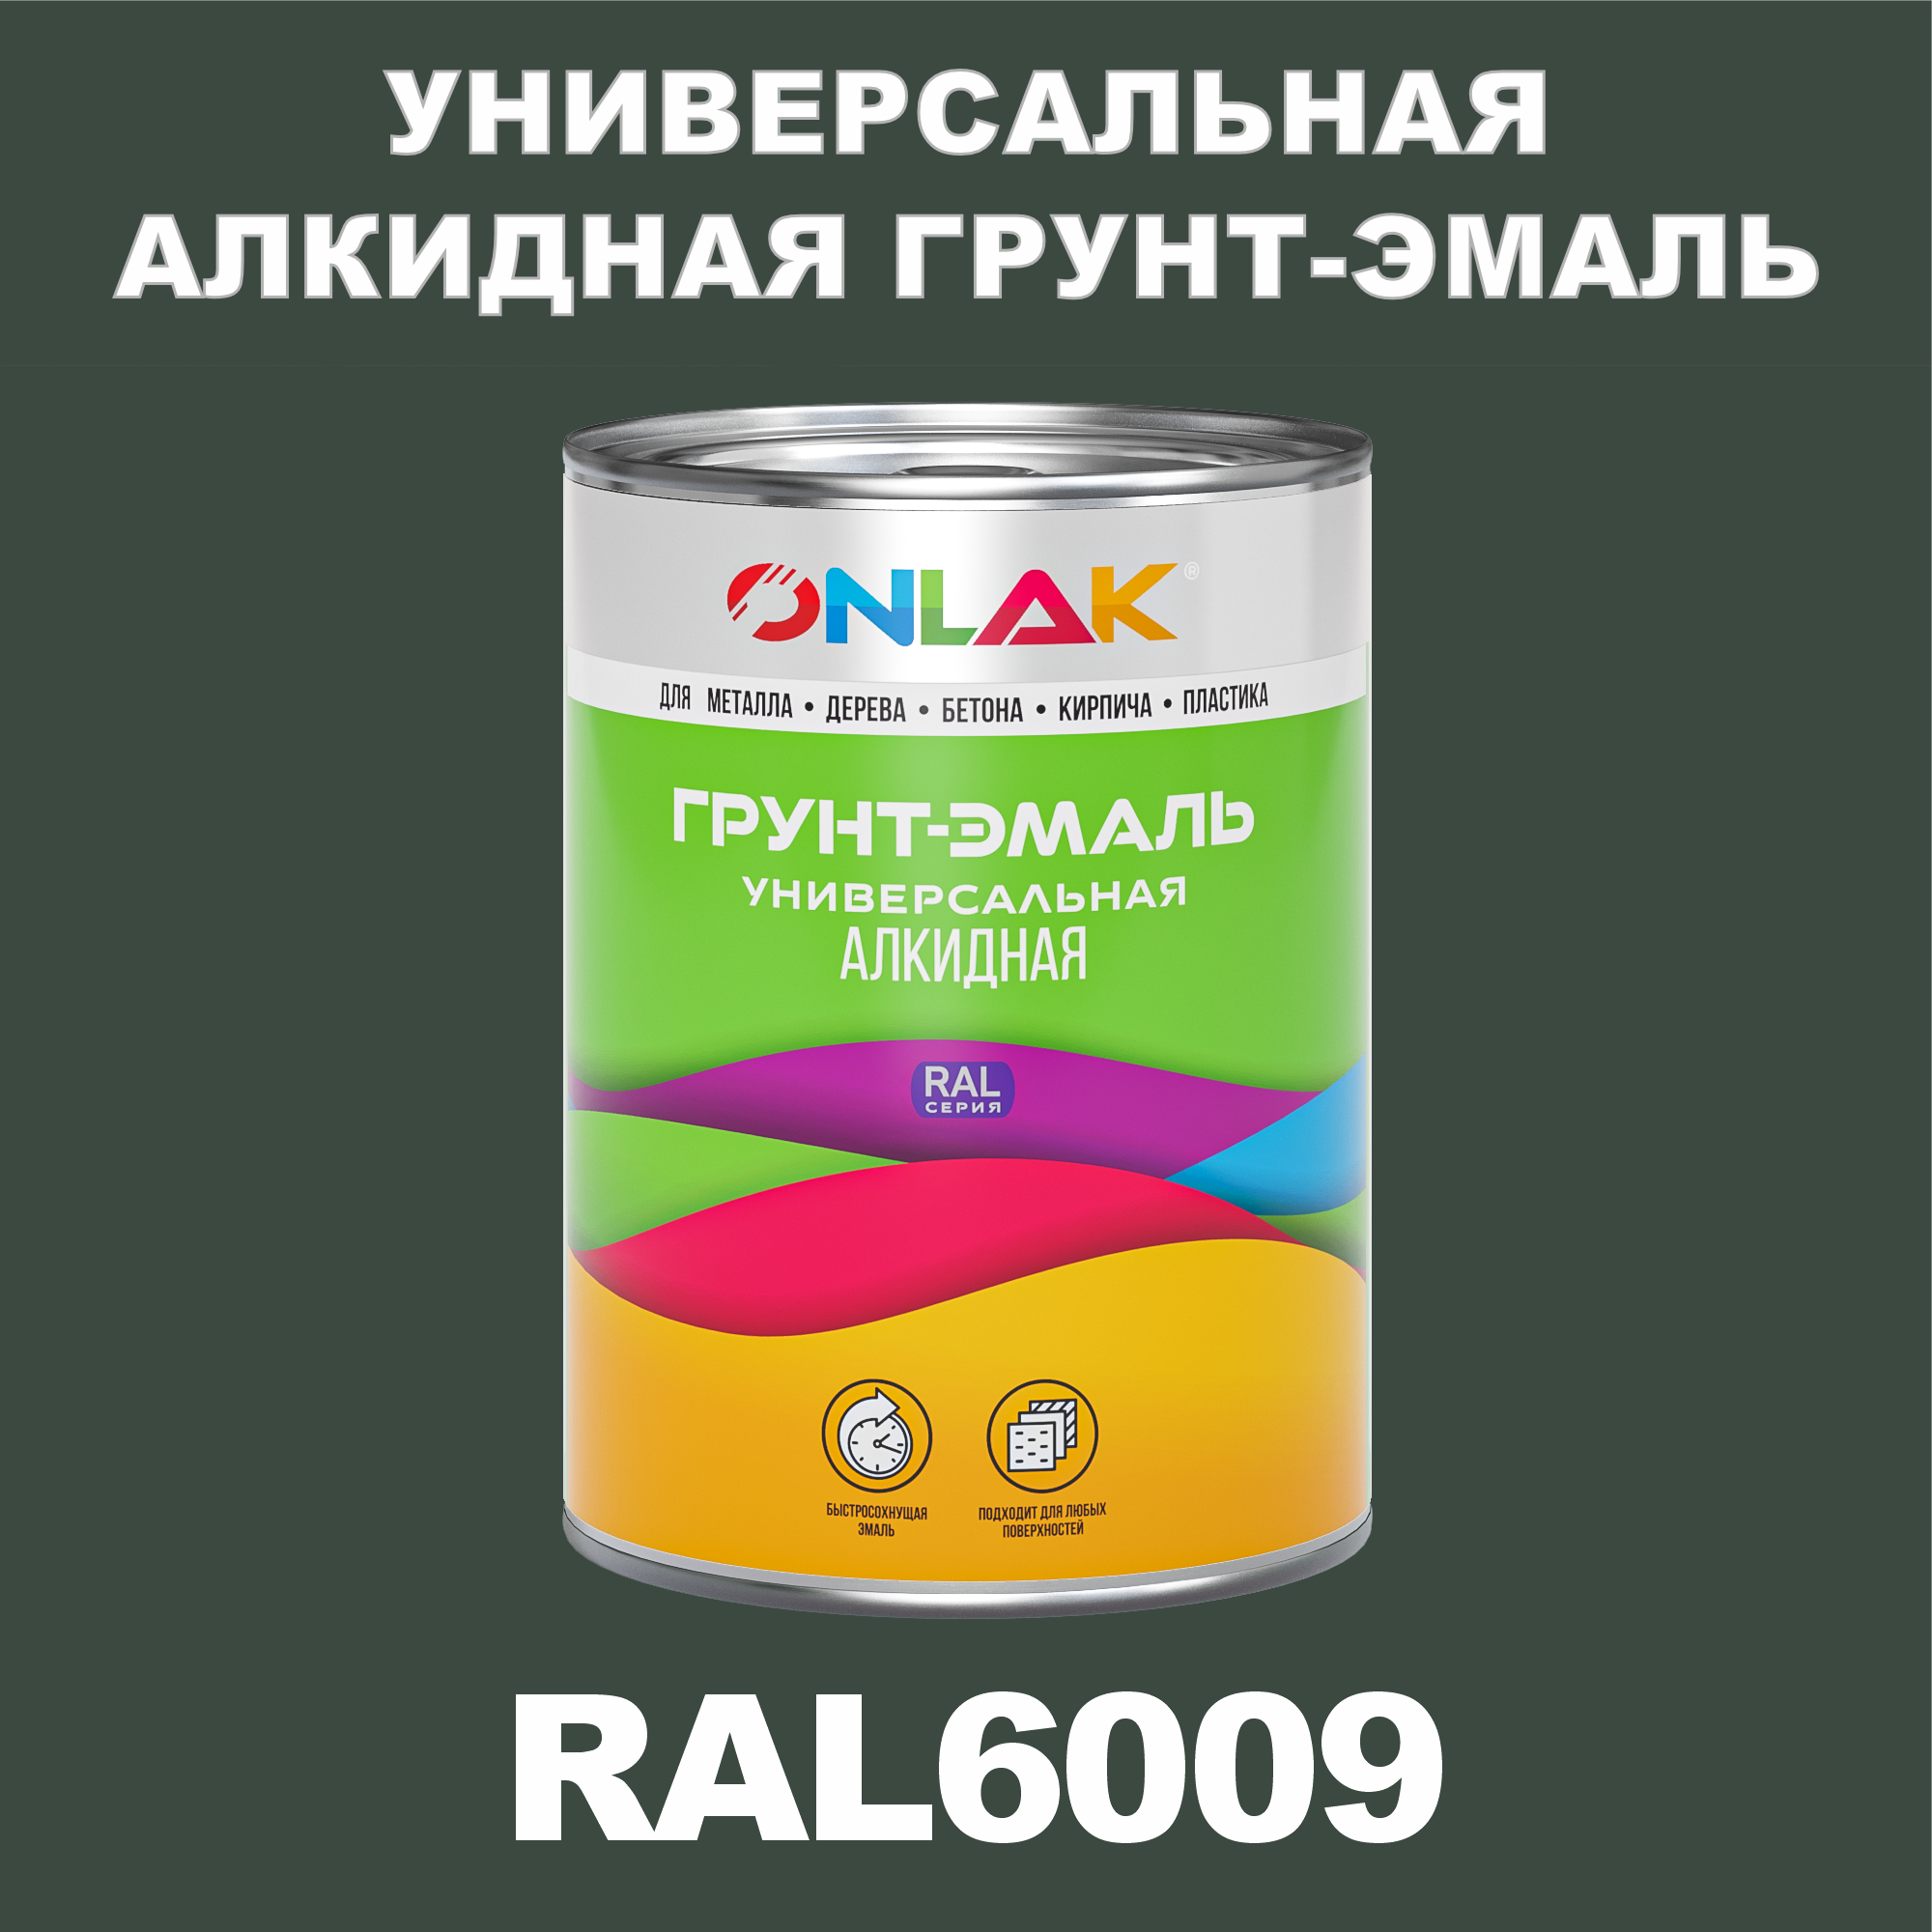 Грунт-эмаль ONLAK 1К RAL6009 антикоррозионная алкидная по металлу по ржавчине 1 кг грунт эмаль yollo по ржавчине алкидная белая 0 9 кг